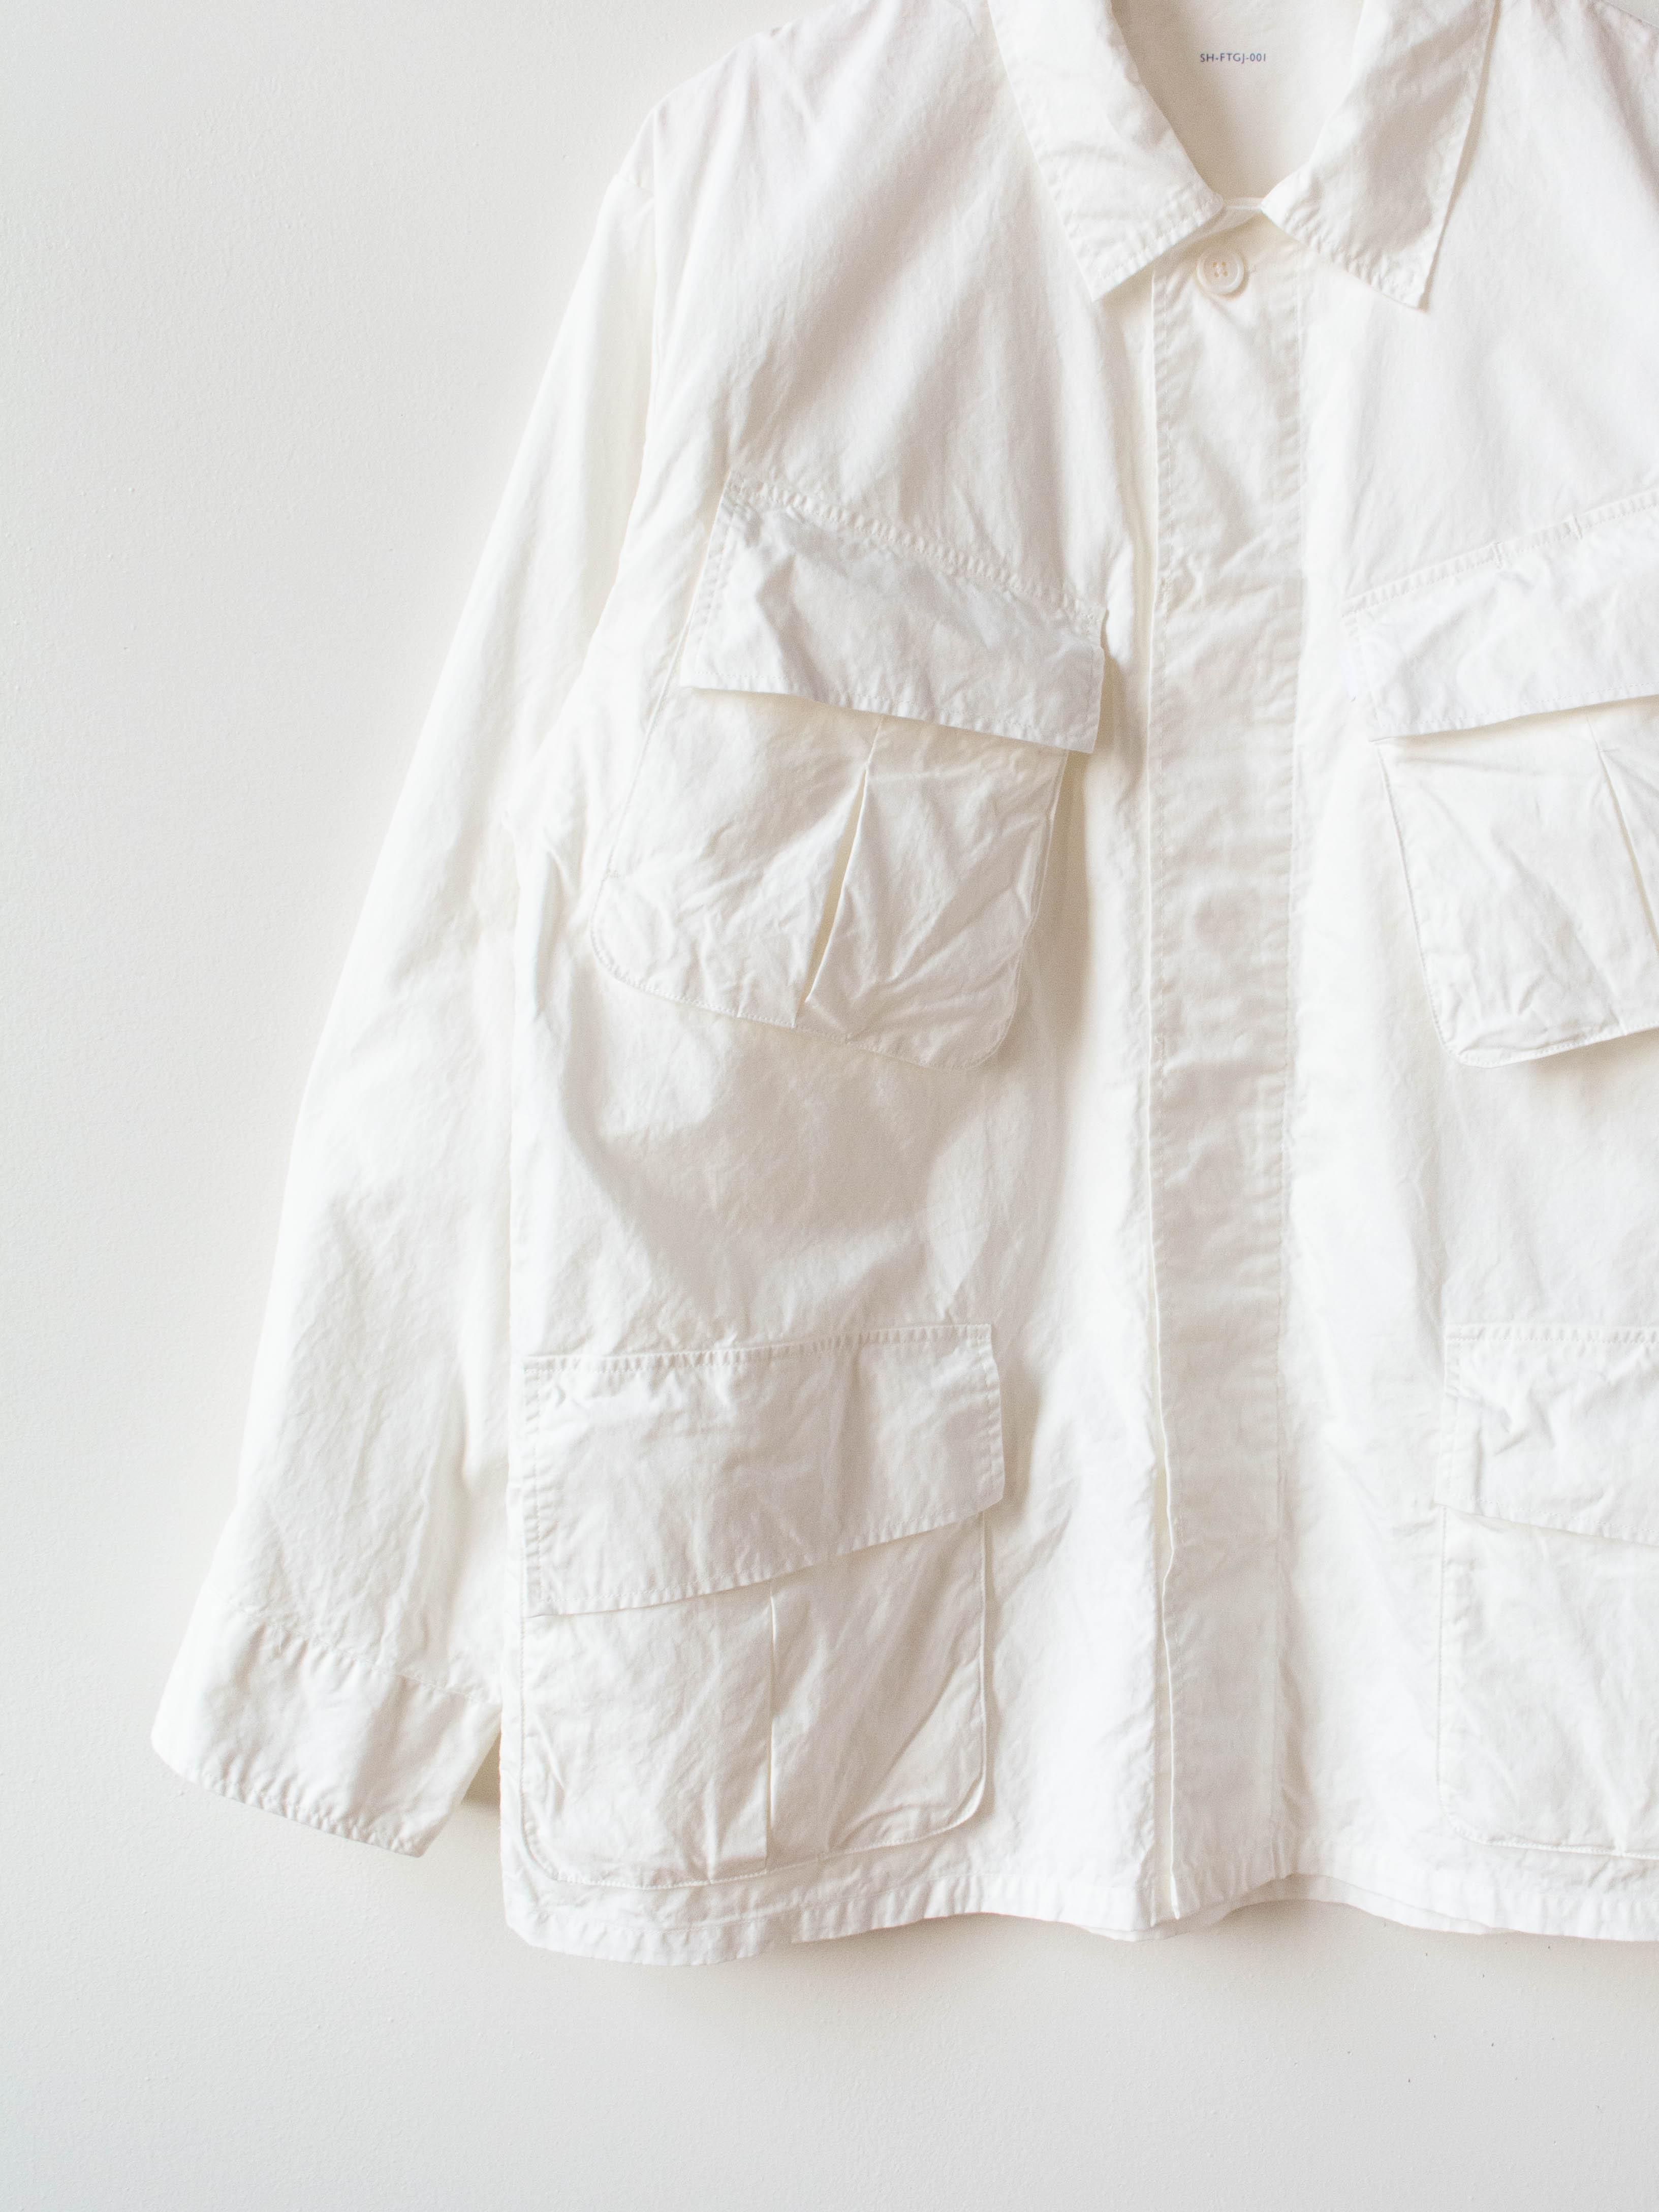 Namu Shop - S H Fatigue Shirt - White